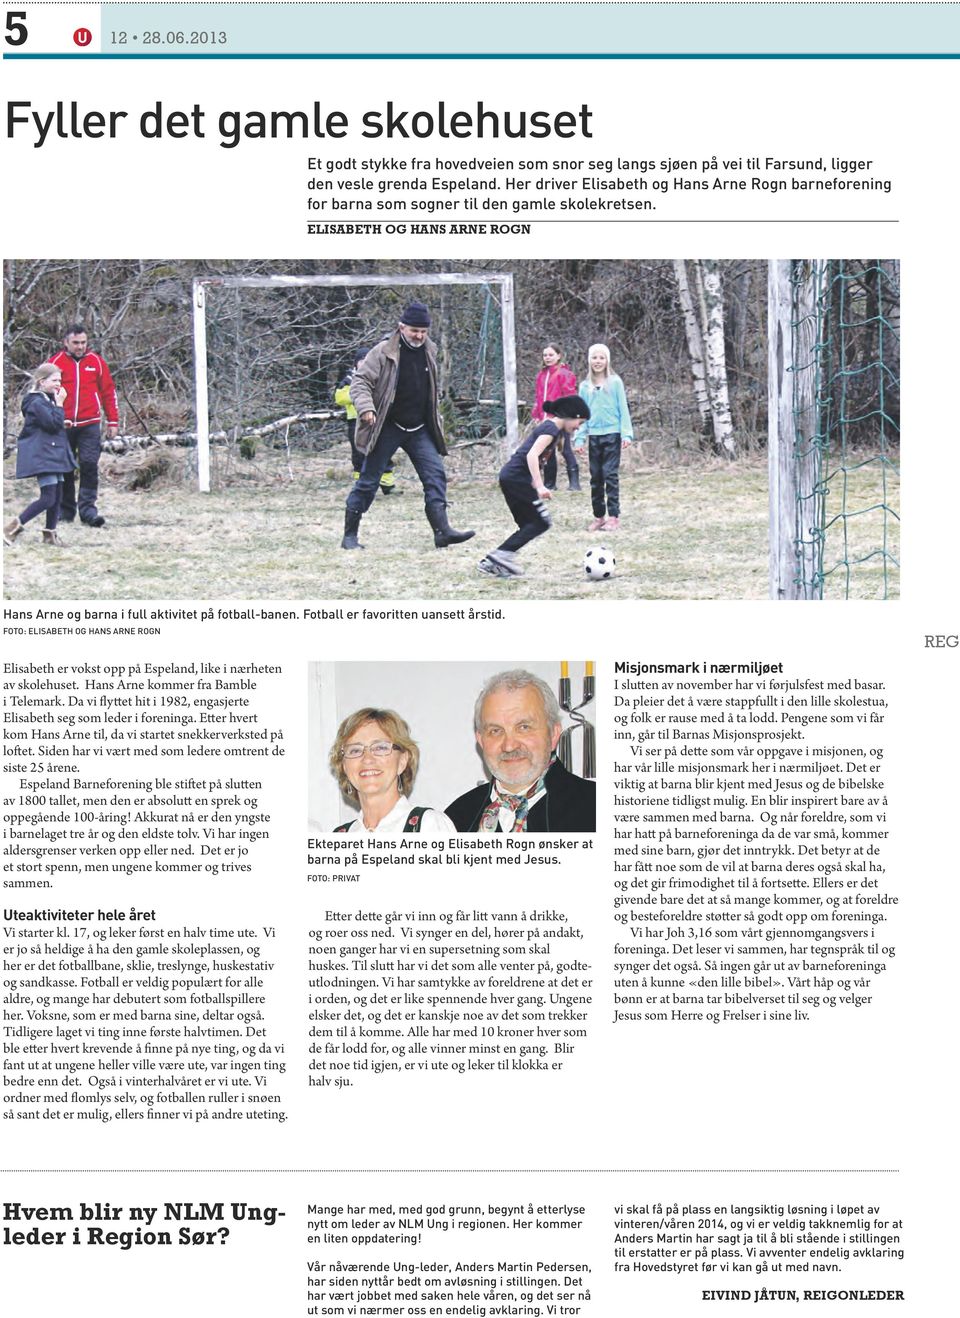 Fotball er favoritten uansett årstid. Foto: Elisabeth og Hans Arne Rogn Elisabeth er vokst opp på Espeland, like i nærheten av skolehuset. Hans Arne kommer fra Bamble i Telemark.